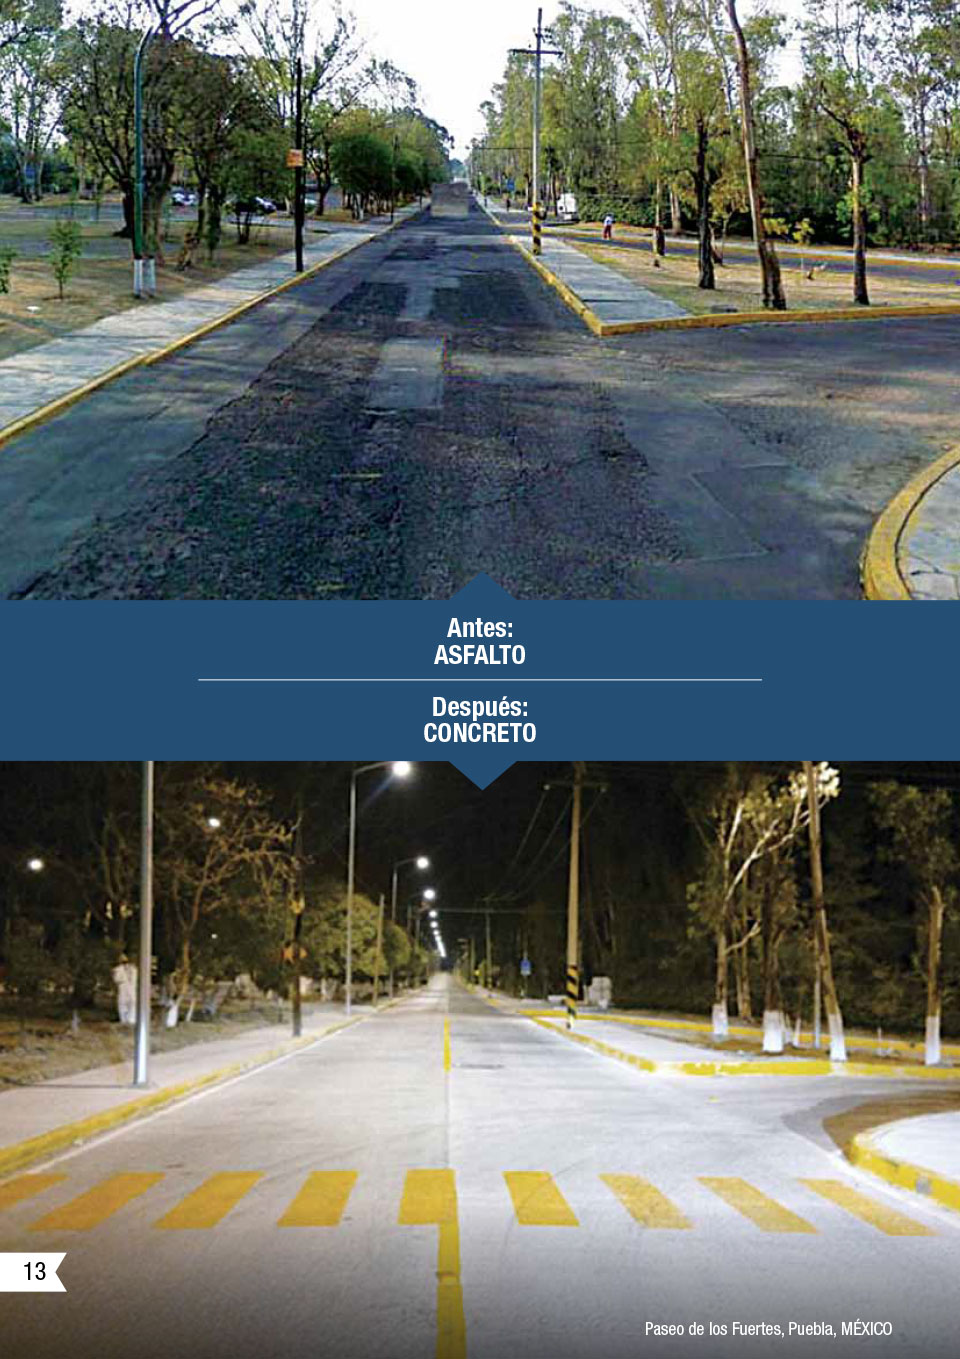 la imagen muestra un antes y despues de una calle usando asfalto y despues concreto